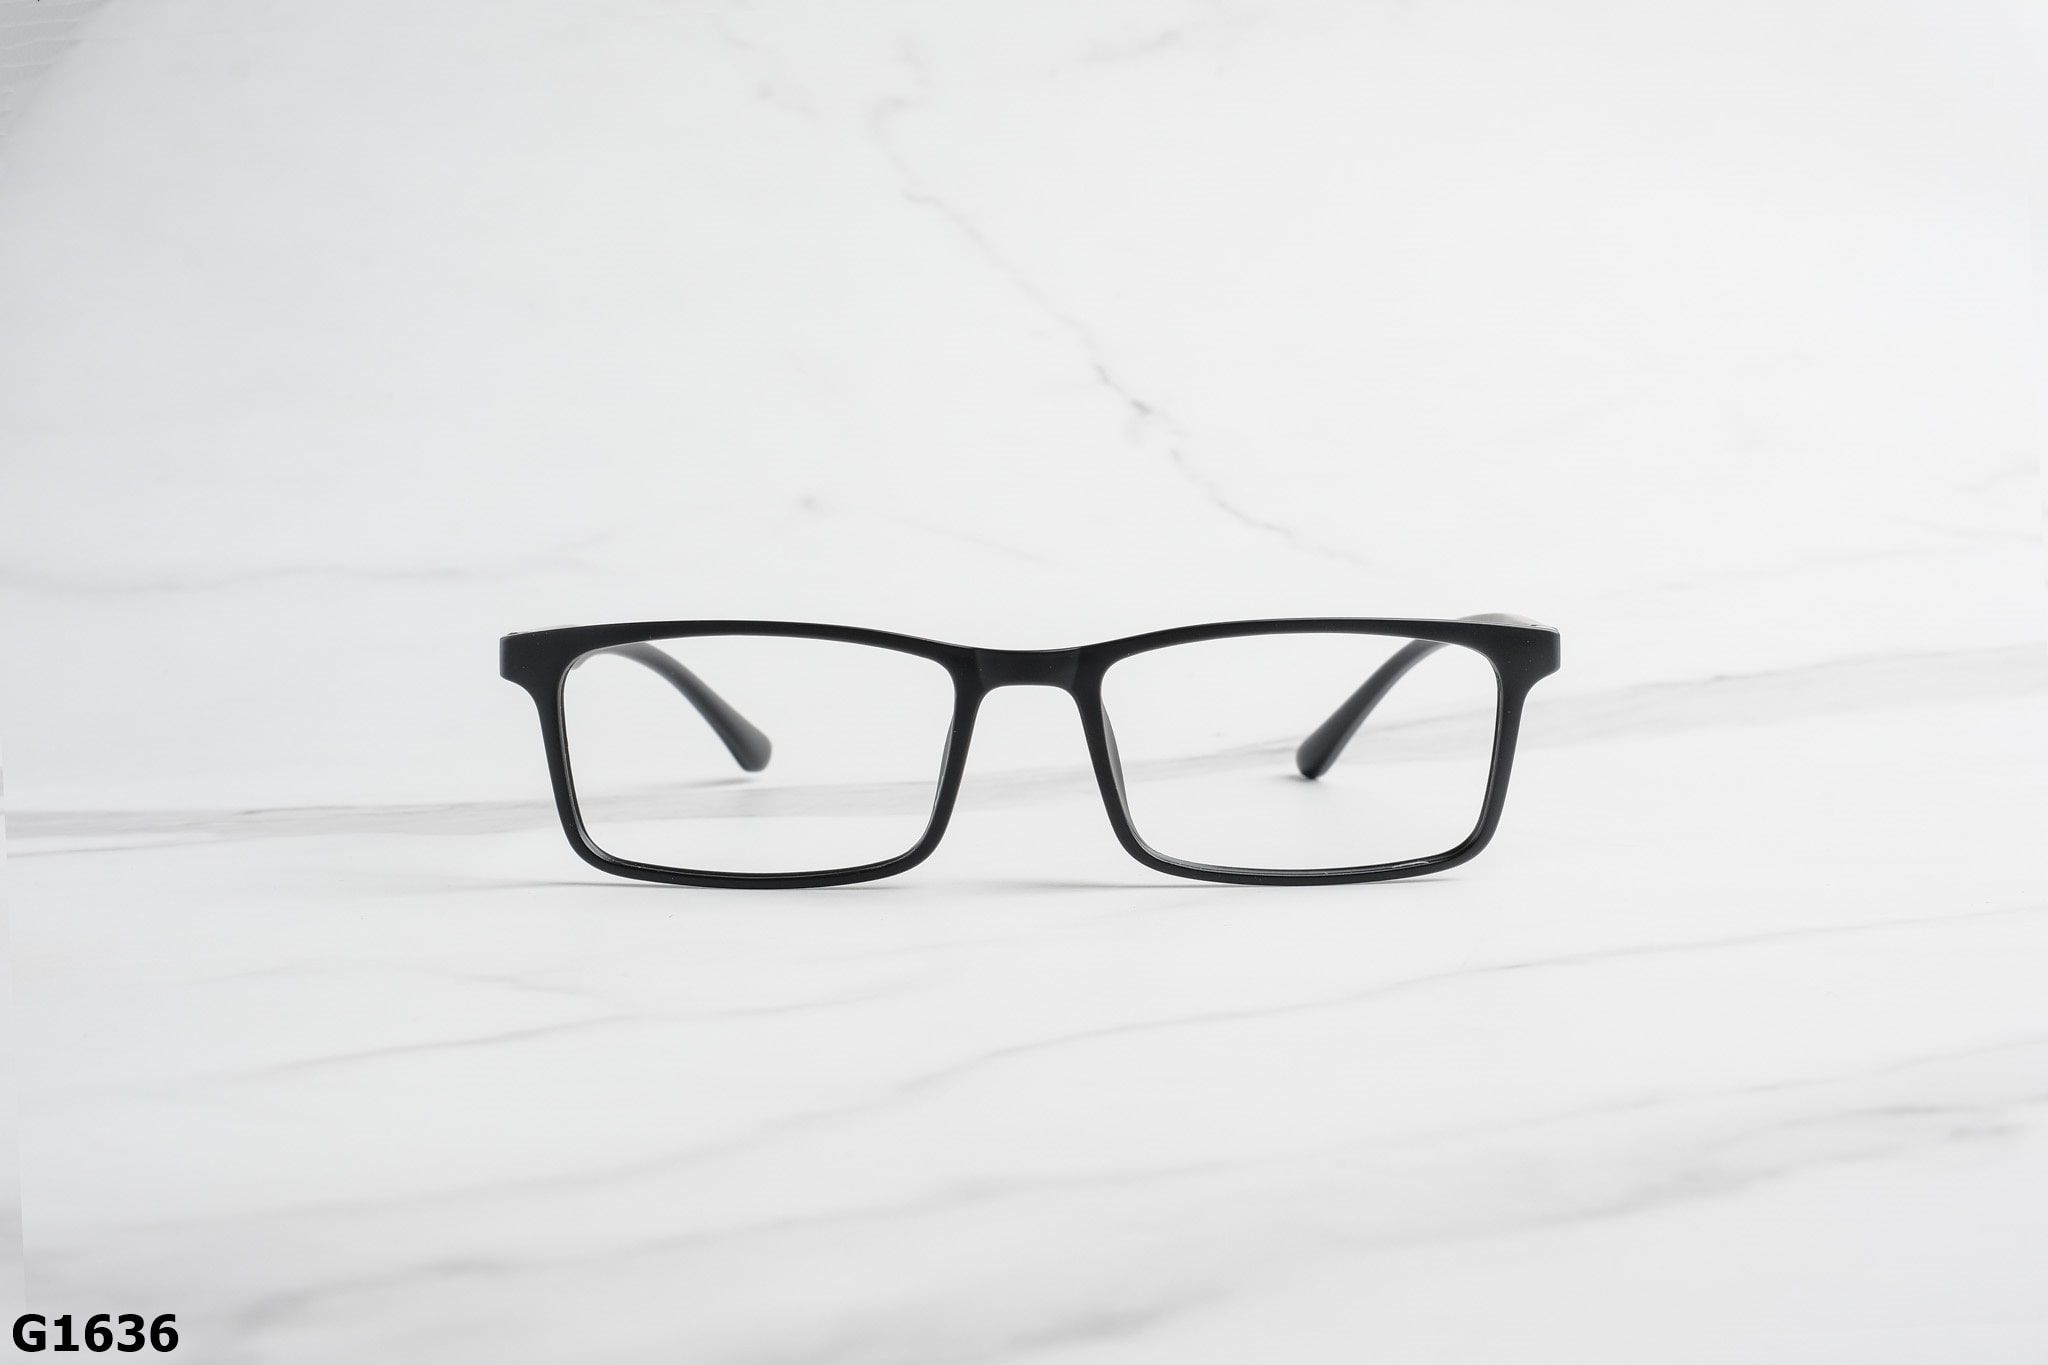  Rex-ton Eyewear - Glasses - G1636 